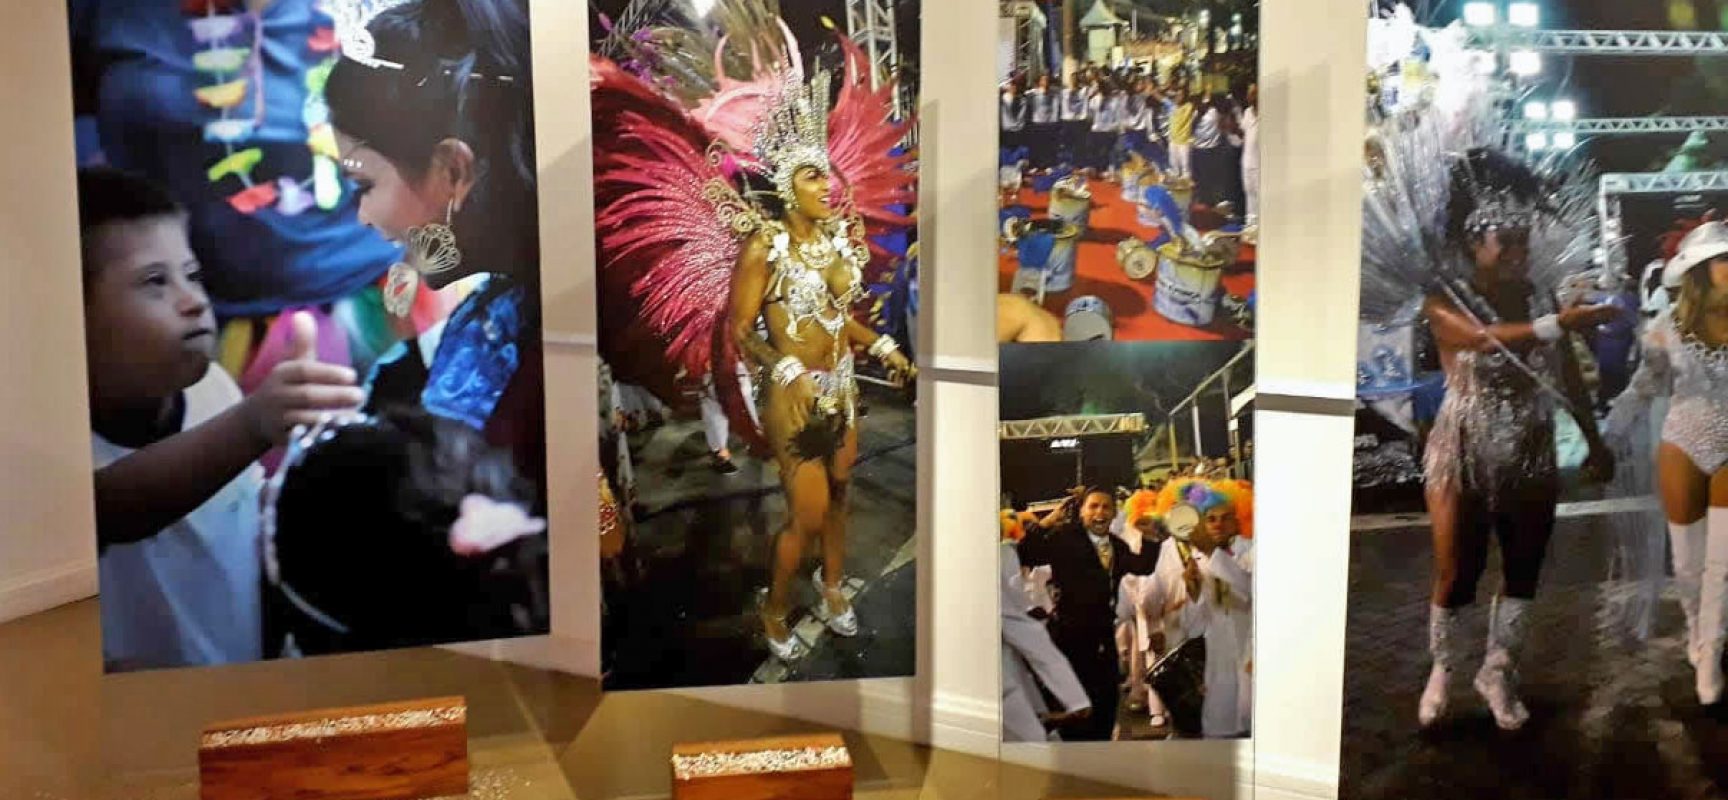 Inauguração da Exposição “Cenas do Carnaval da Vela” ocorre nesta quinta-feira